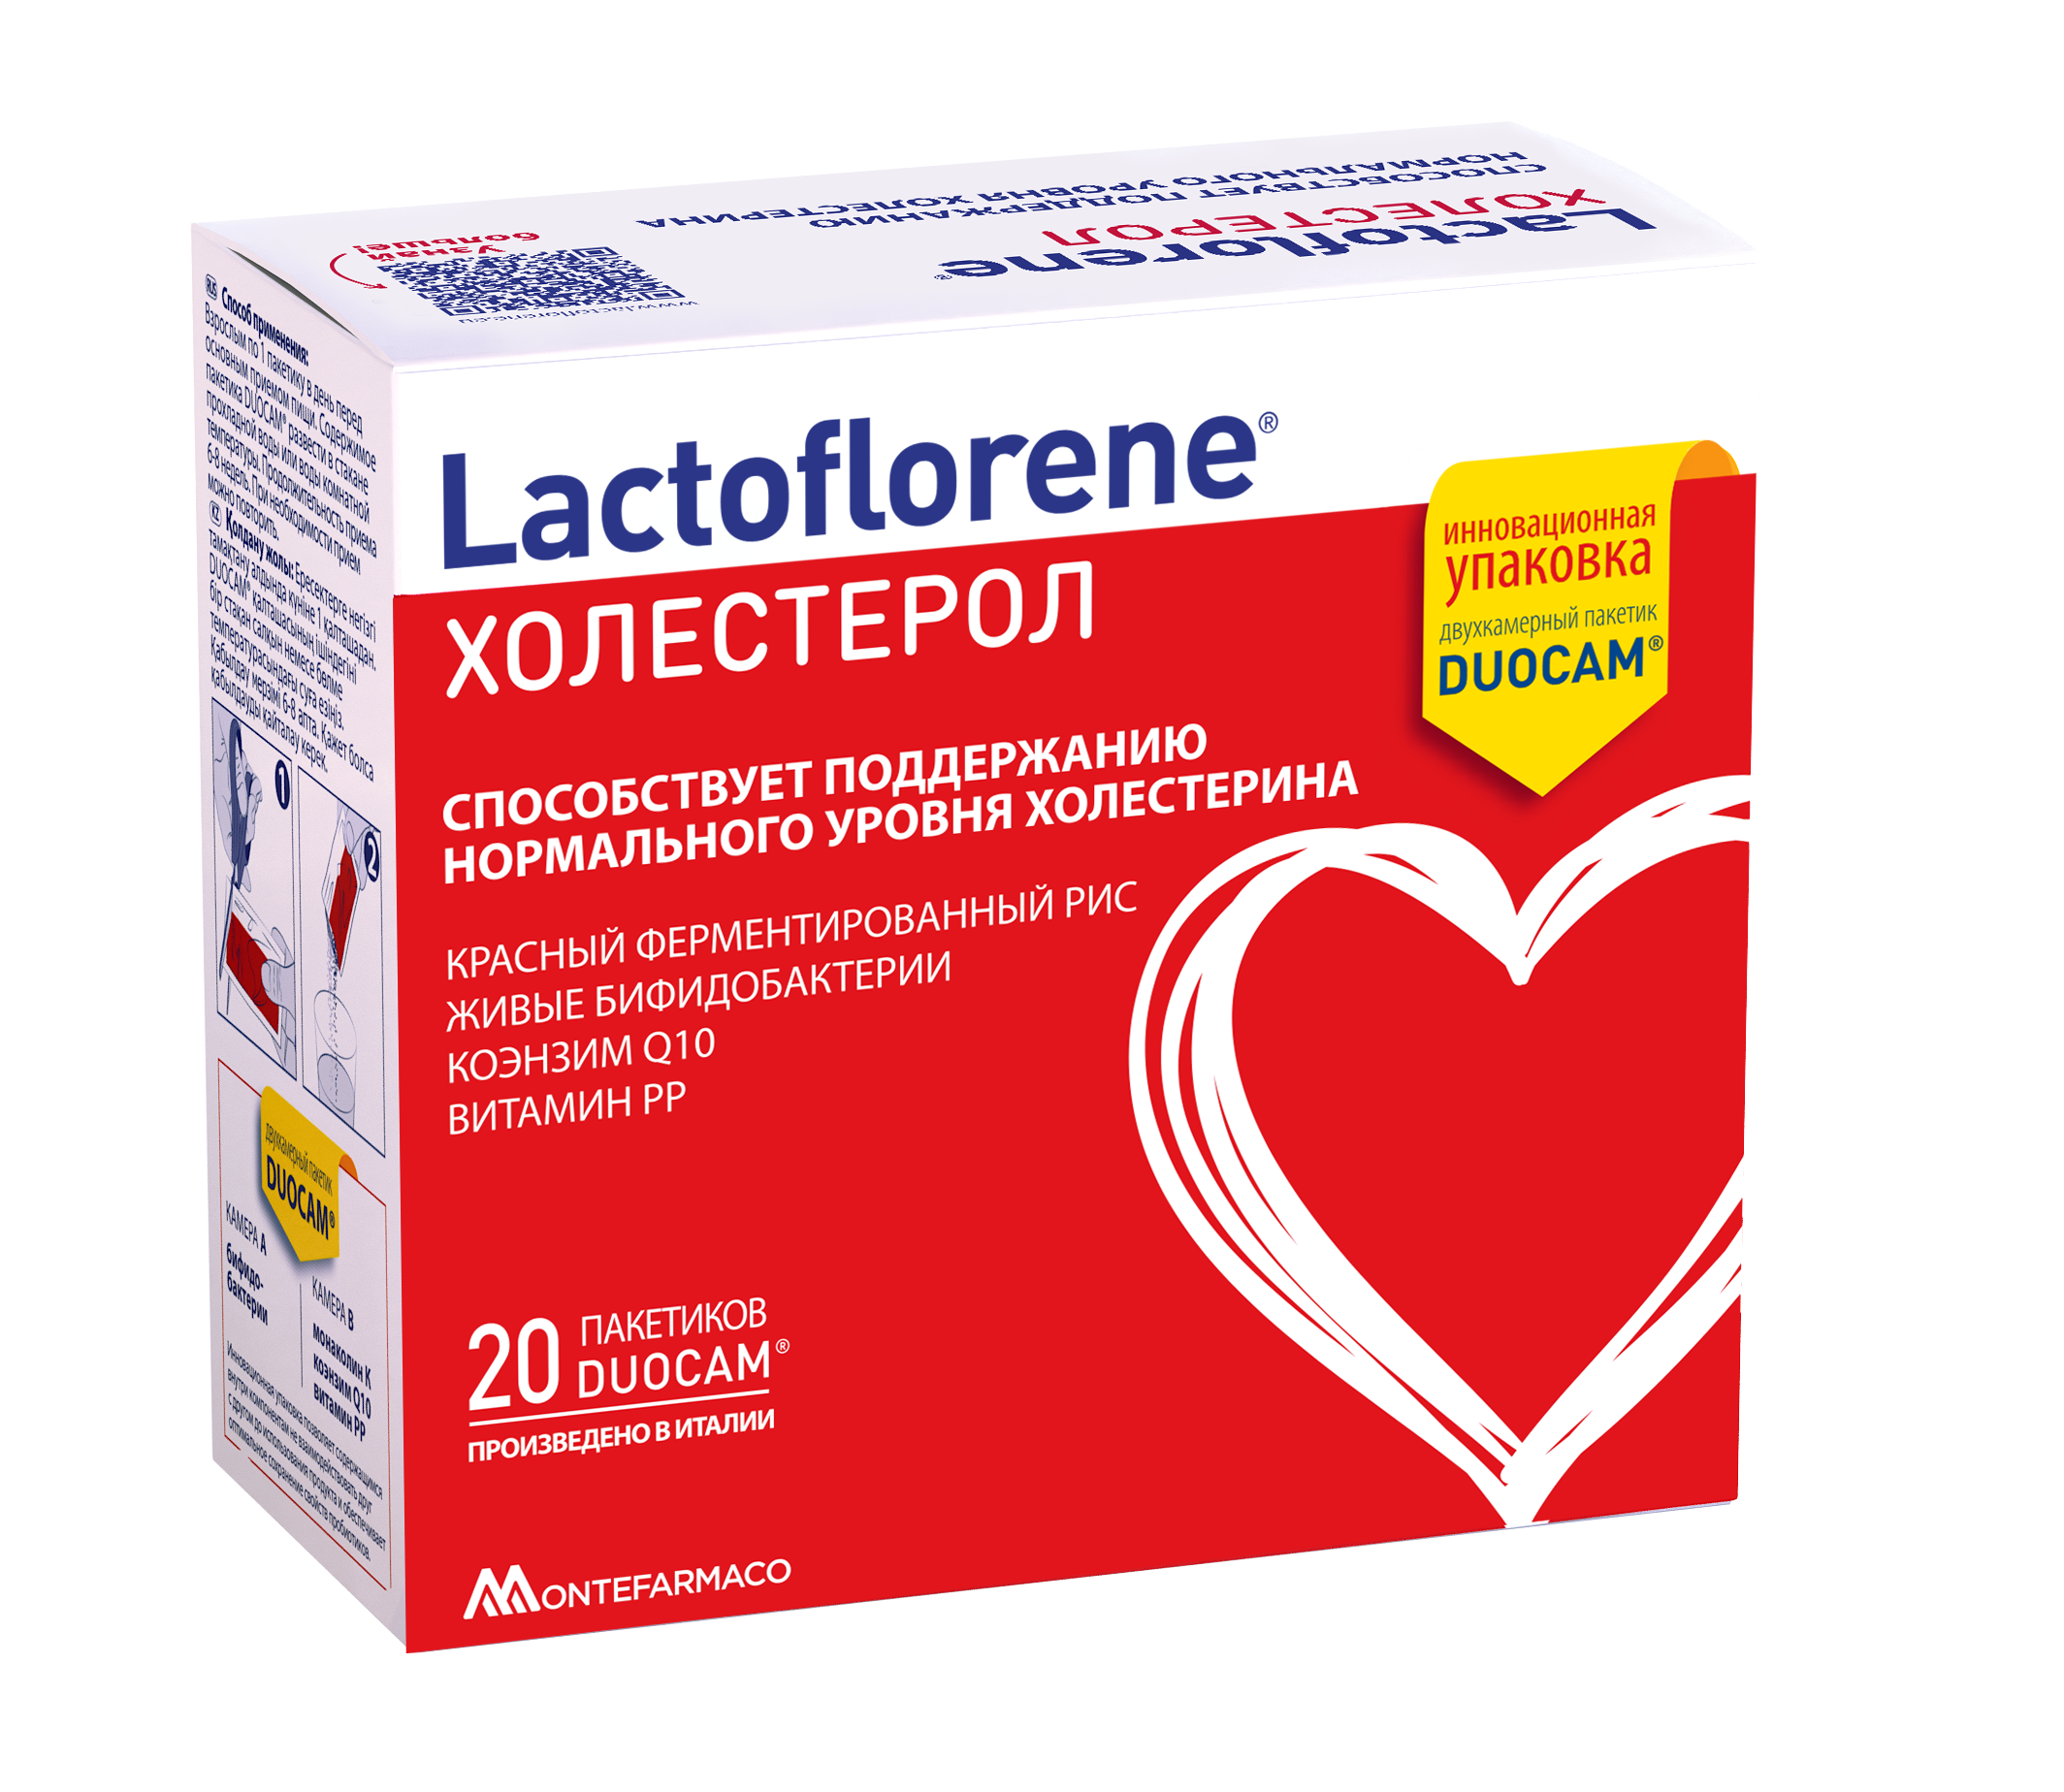 Лактофлорене холестерол, Lactoflorene холестерол порошок 2-х камерный 3, 6г (1, 8г+1, 8г) 20 шт., S.I.I.T.  - купить